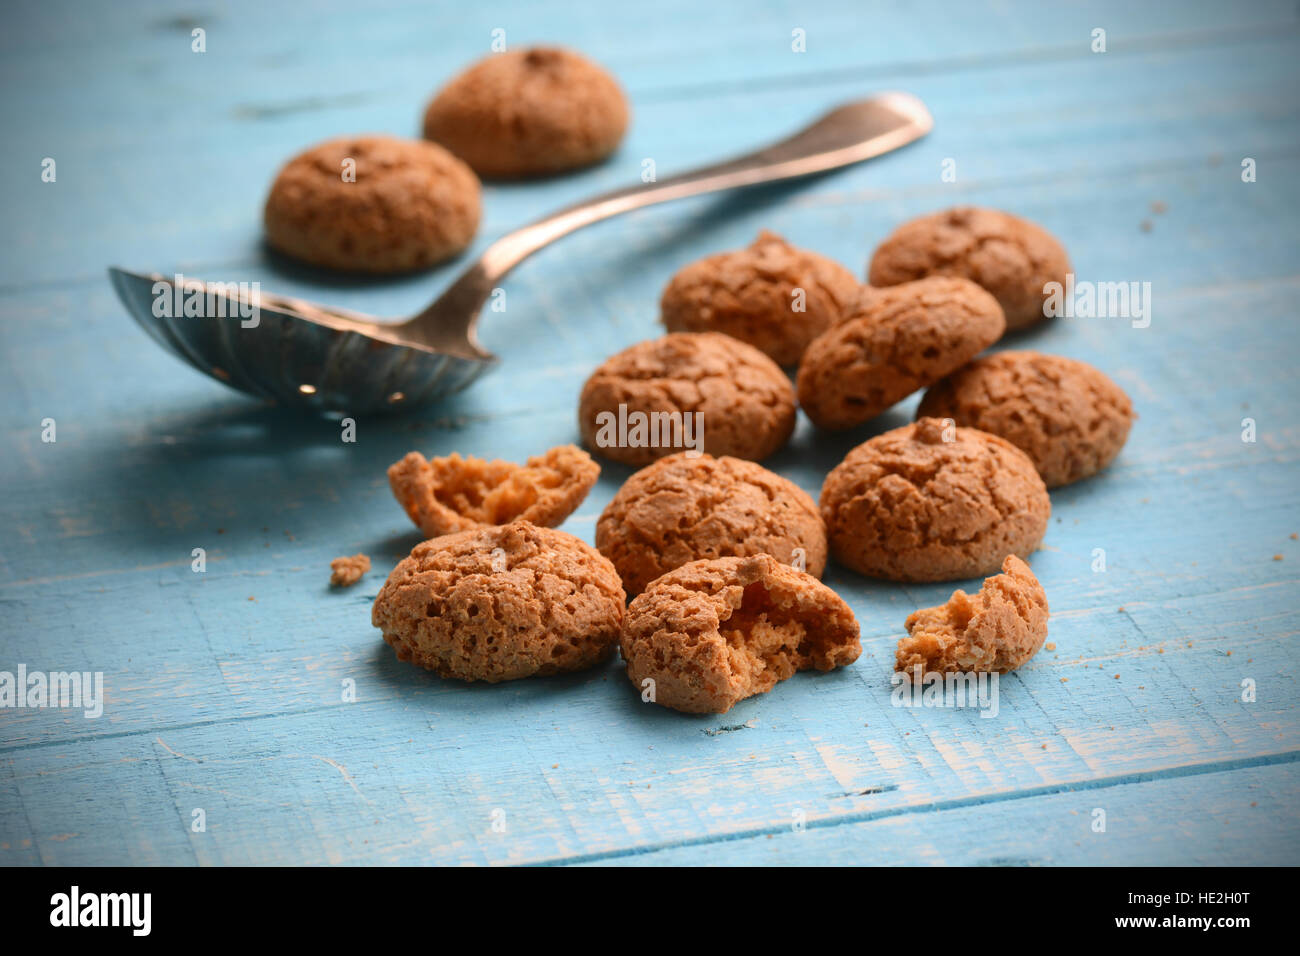 Biscuits amaretti sur la table - Cuisine italienne de confiseries Banque D'Images